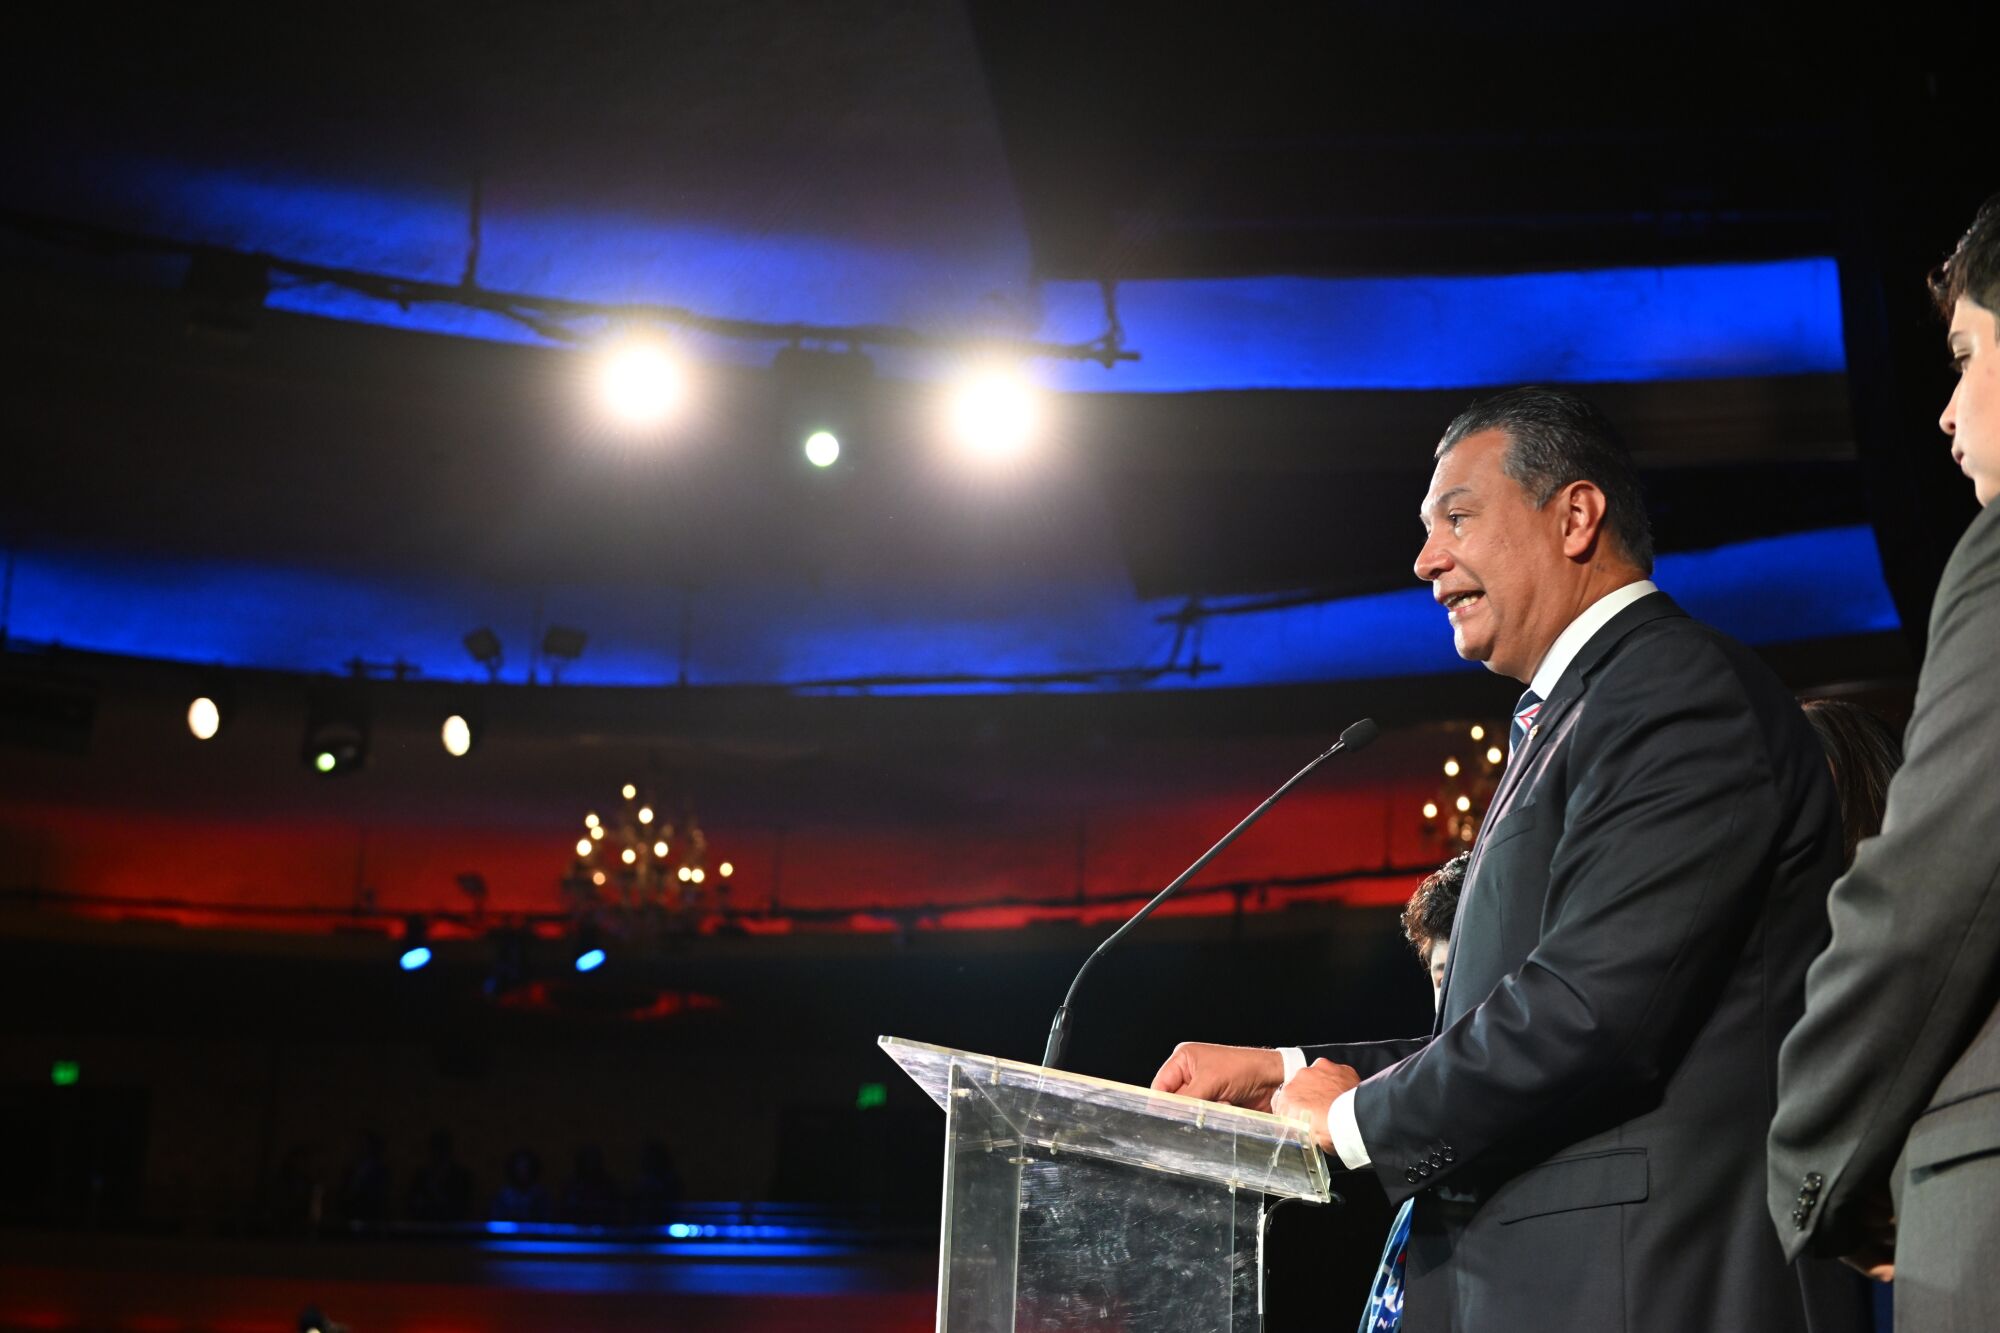 Senator Alex Padilla berbicara pada malam pemilihan di Los Angeles.